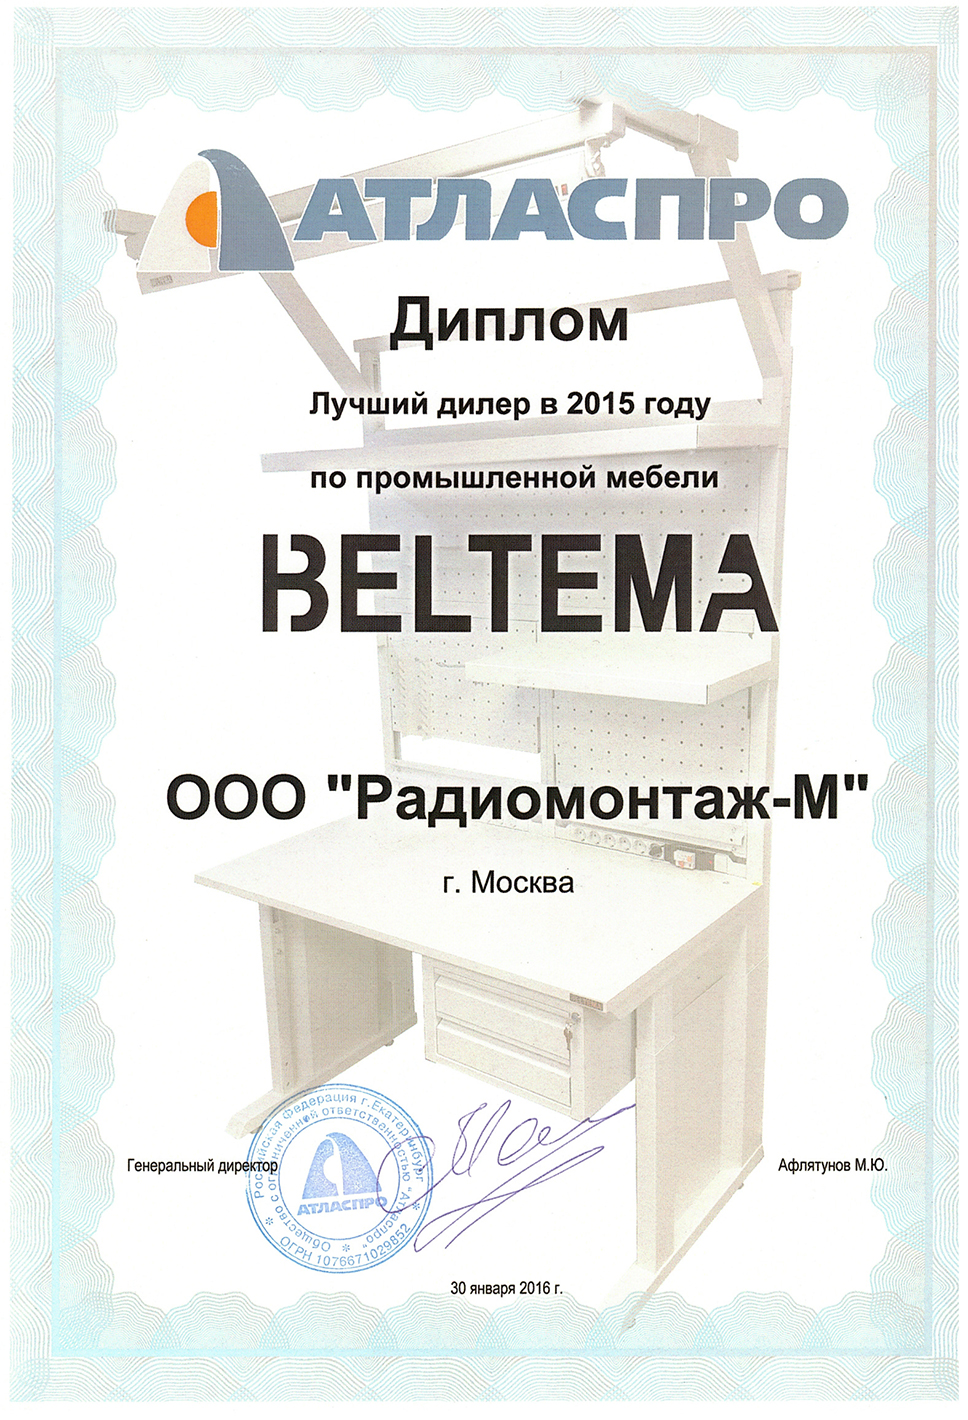 Лучший дилер промышленной мебели BELTEMA в 2015 году.